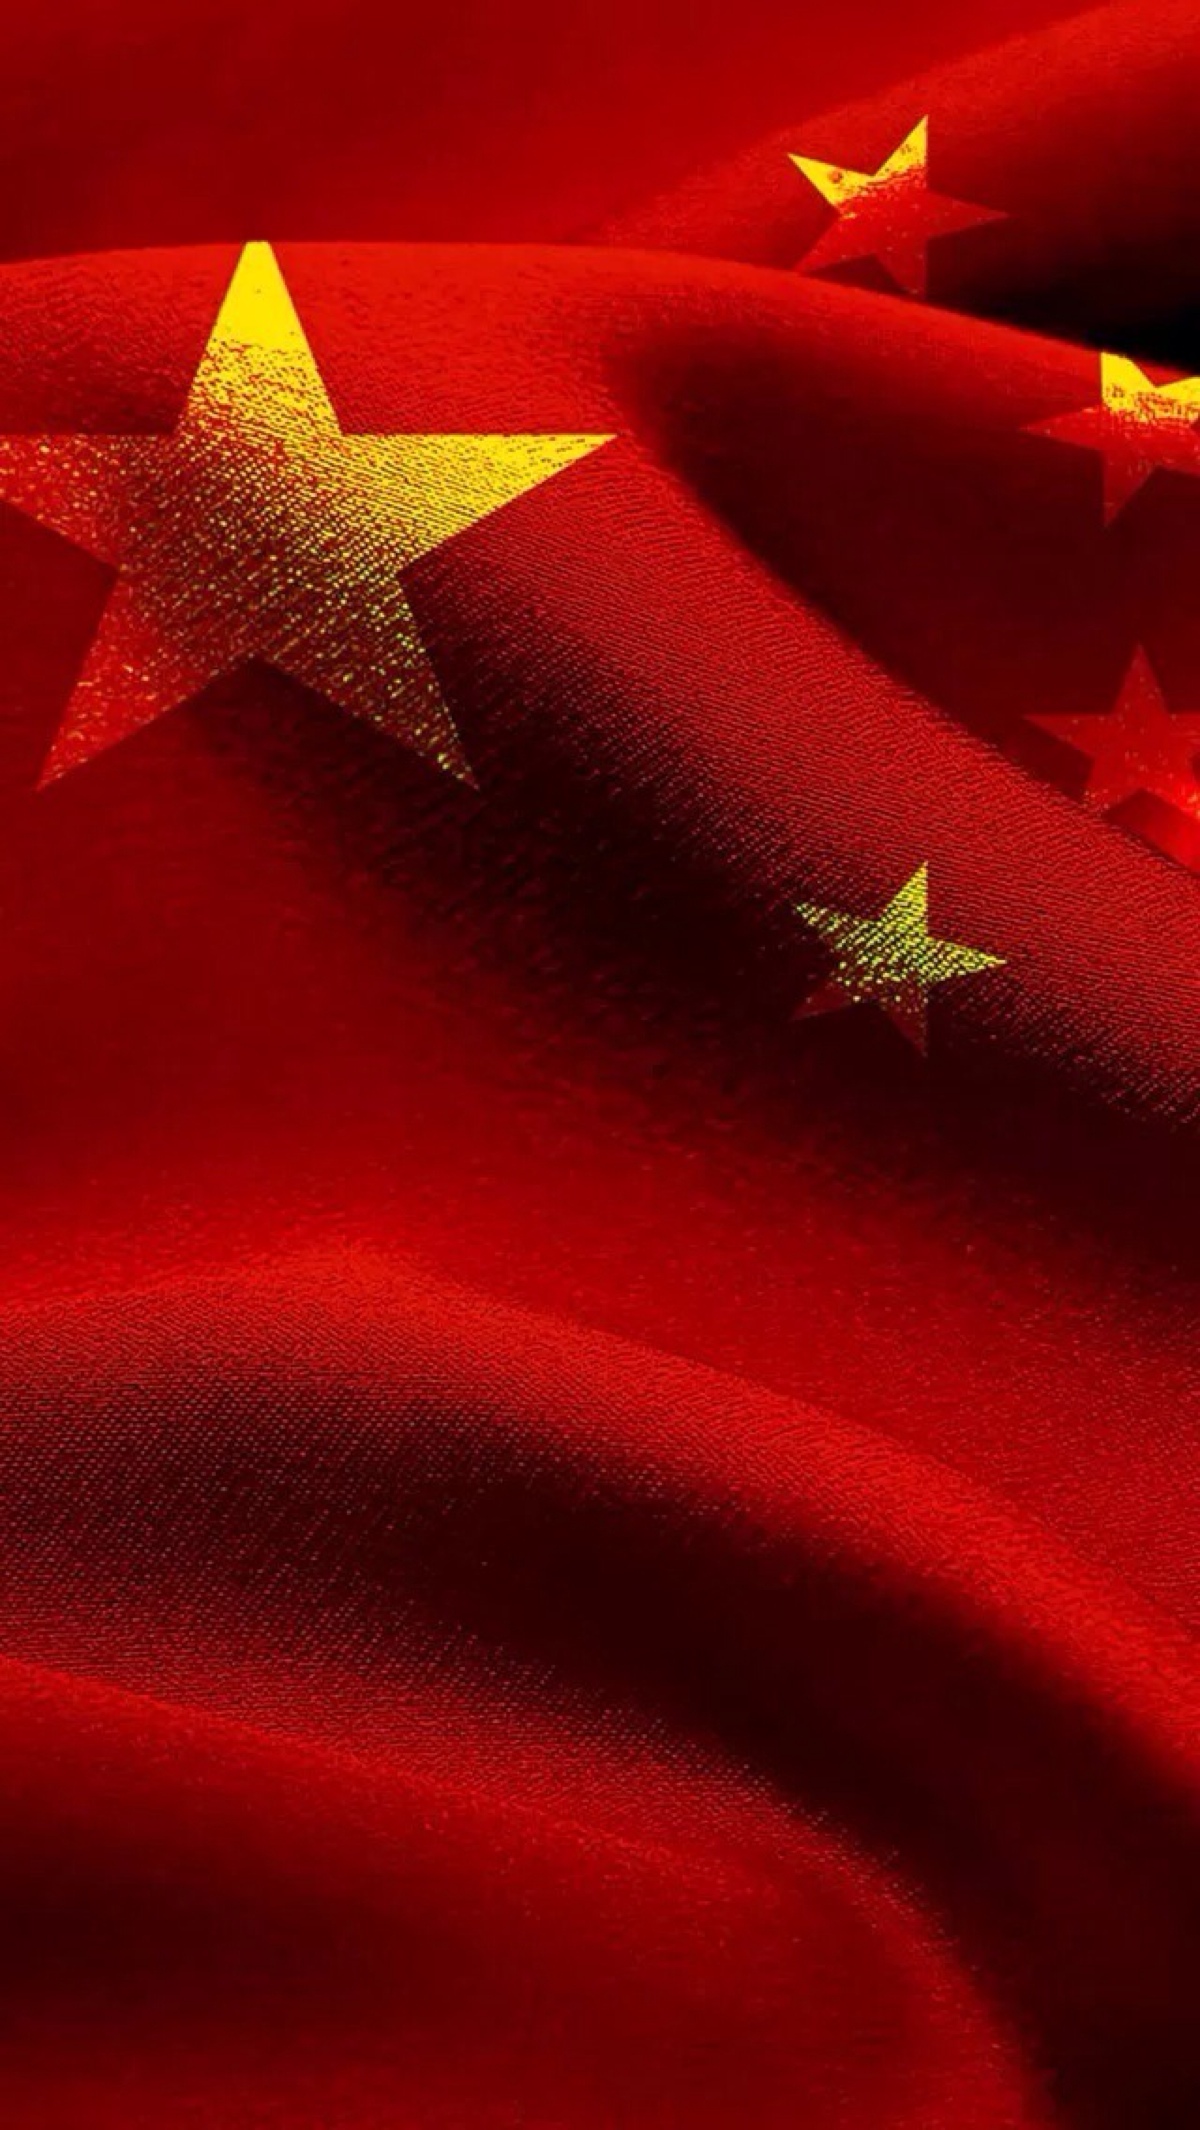 中国国旗壁纸手机壁纸图片